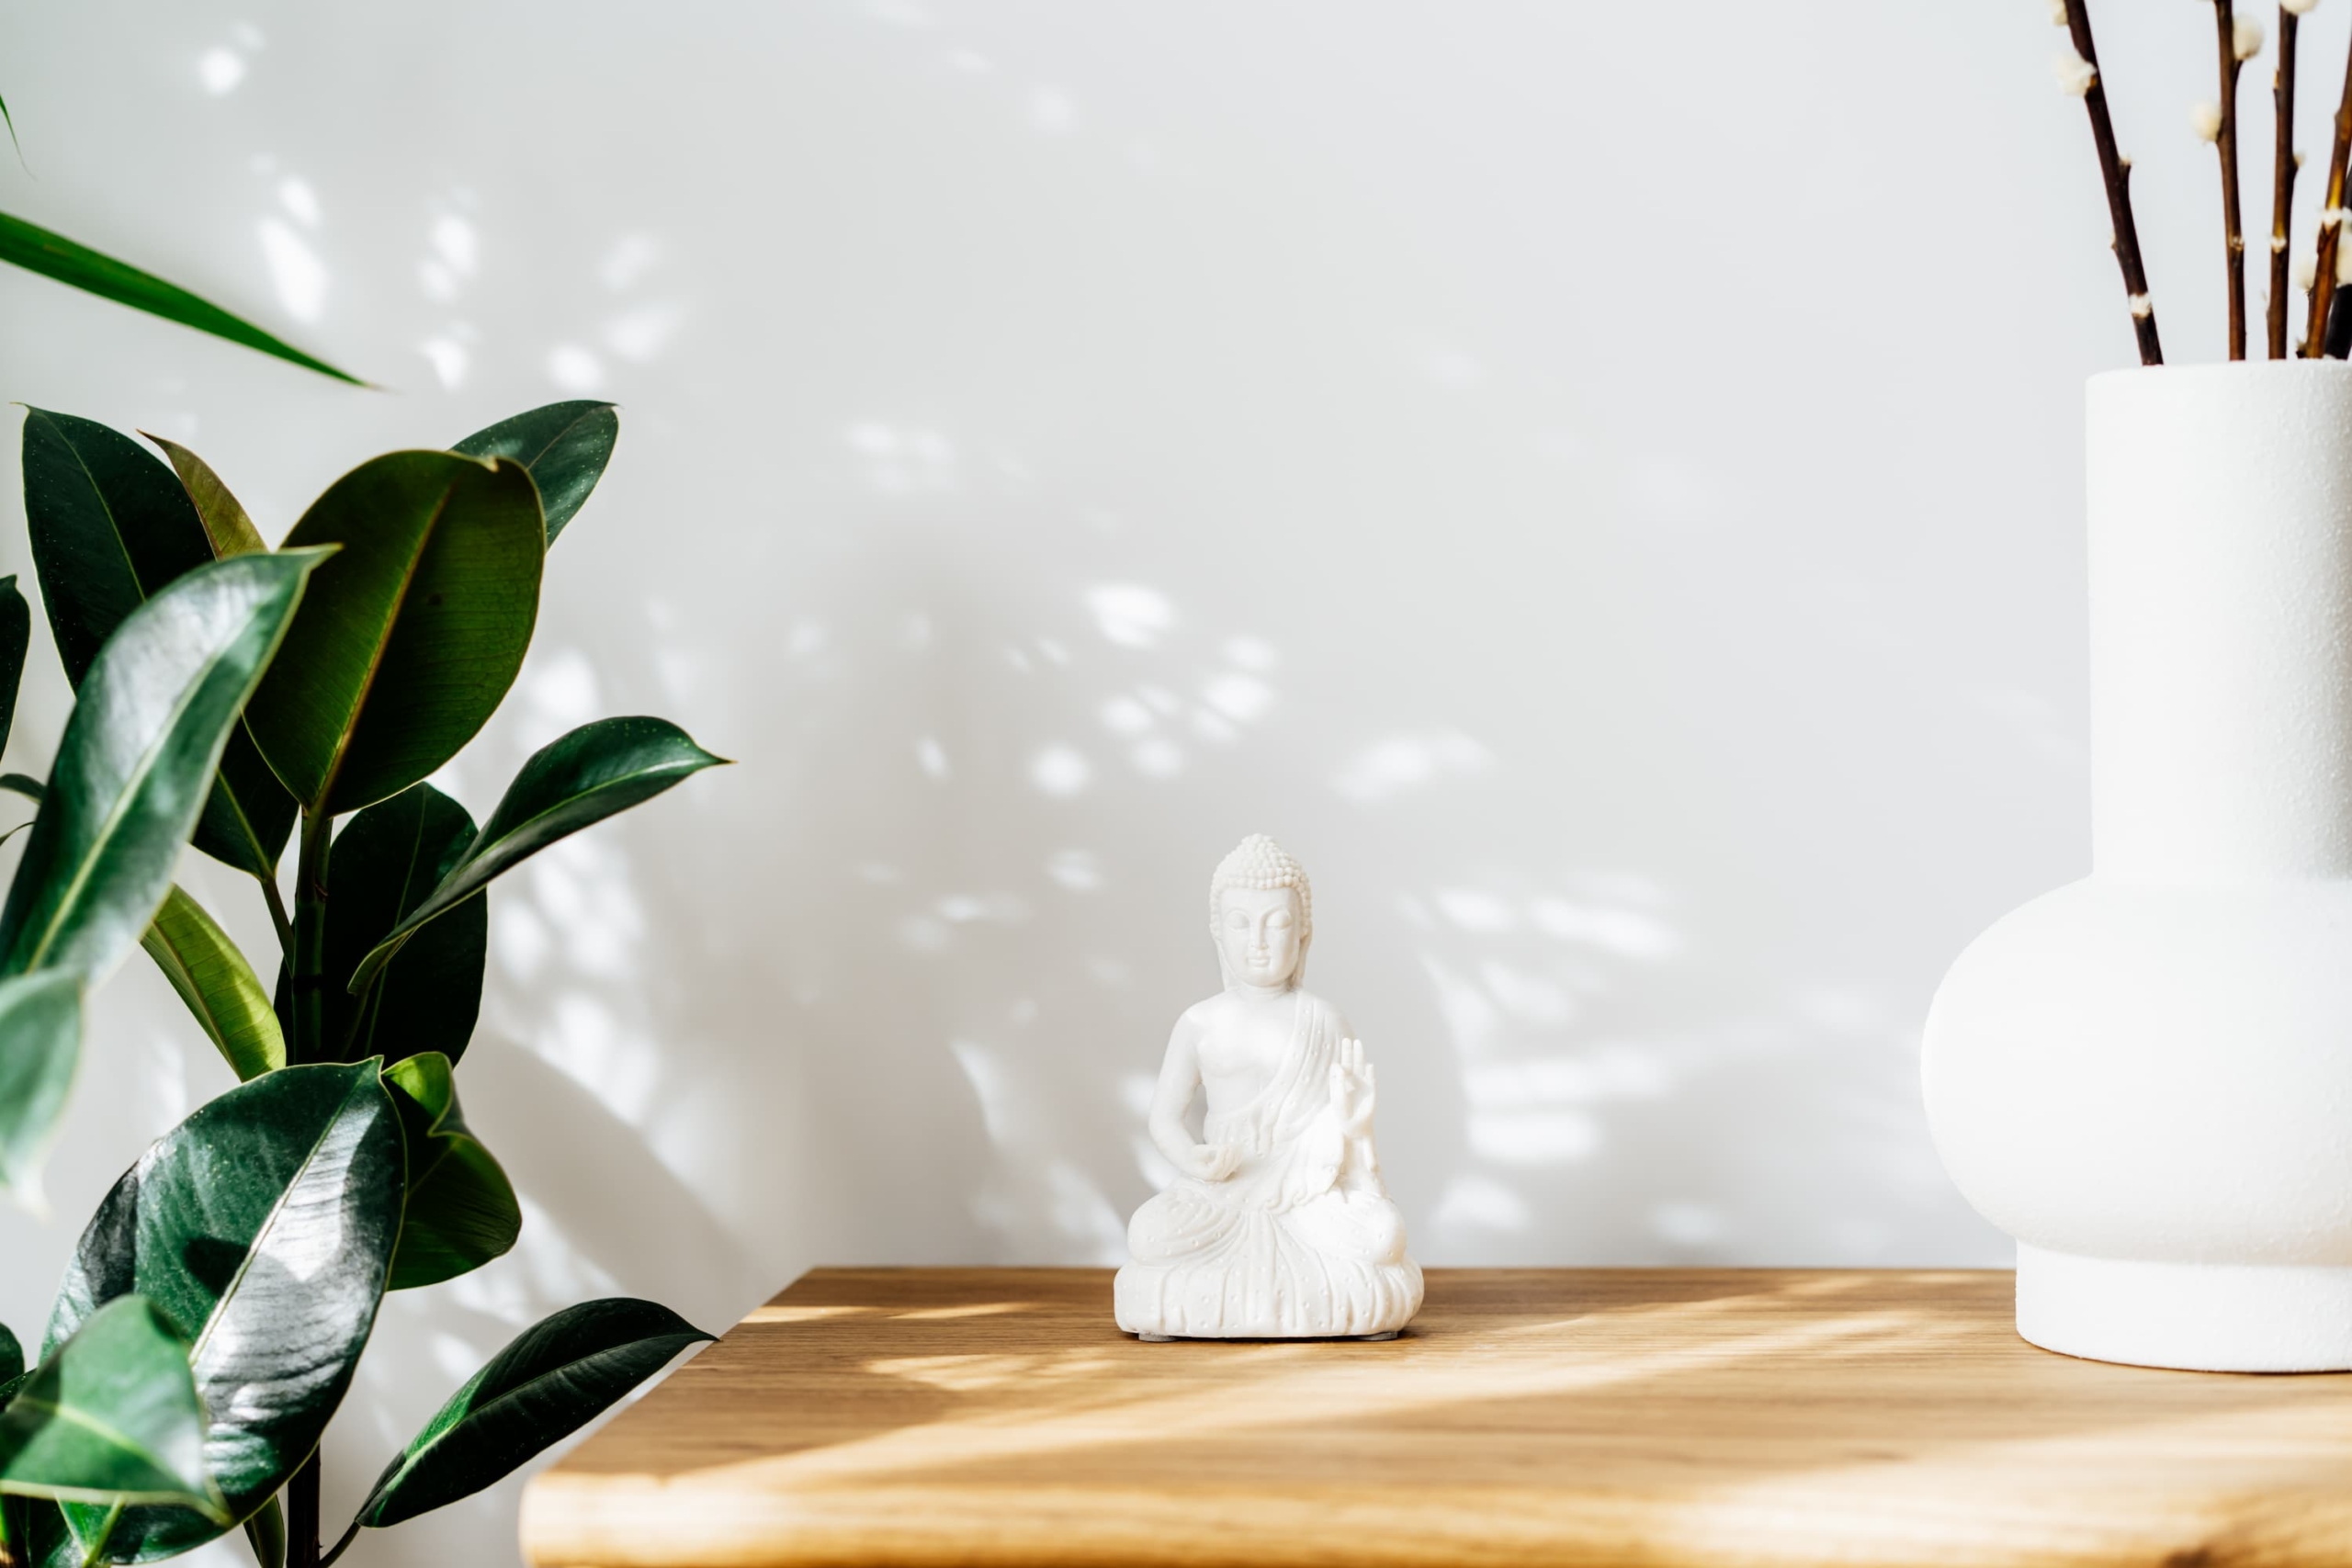 Comment choisir un objet de décoration Bouddha